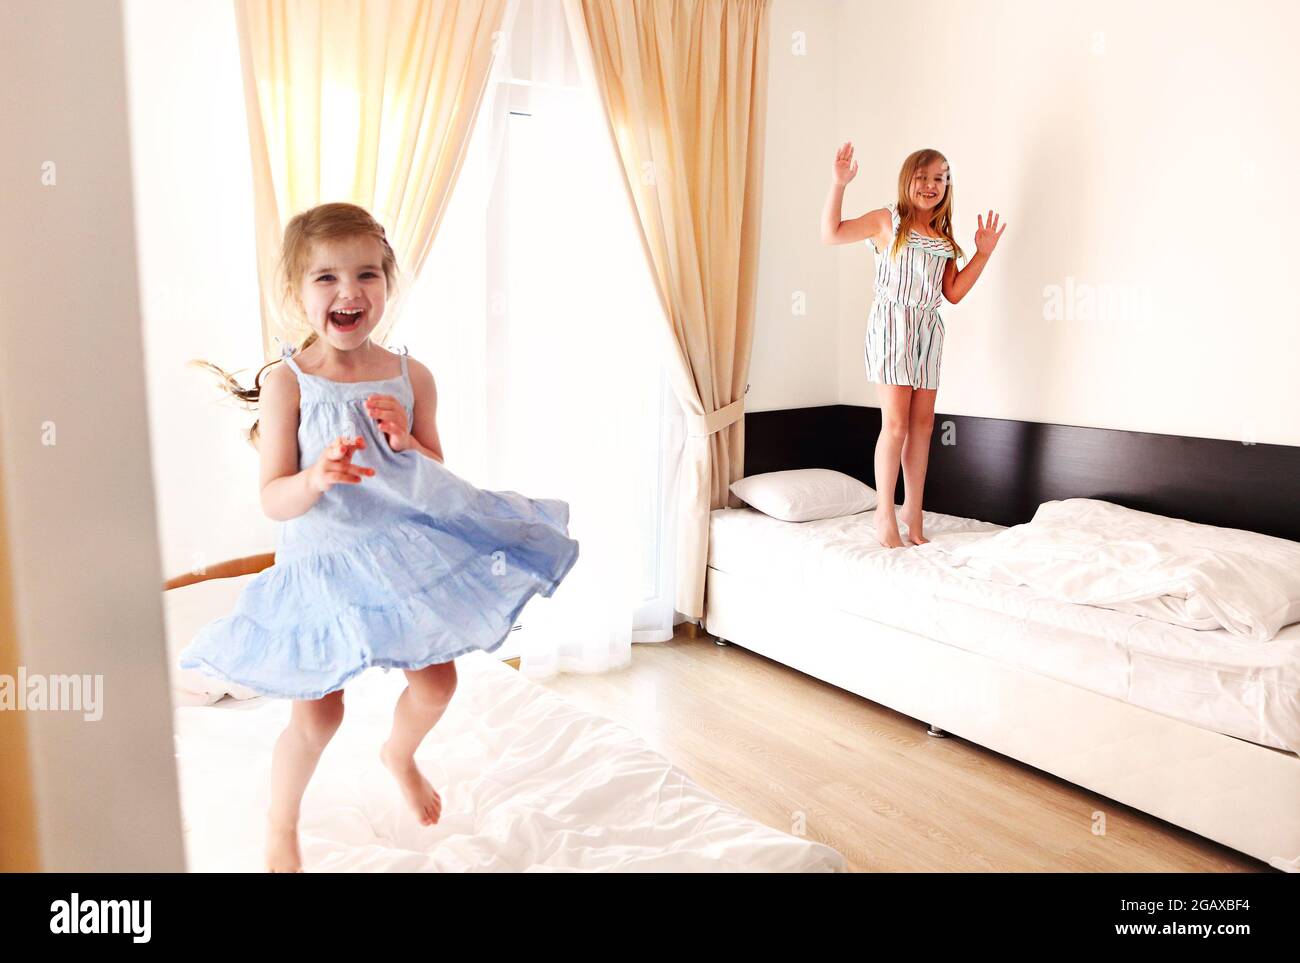 Deux petites sœurs mignonnes et insouciantes filles dans des vêtements décontractés jouant en s'amusant dans la chambre des enfants le matin ensoleillé. Les enfants aiment bondir sur les lits Banque D'Images